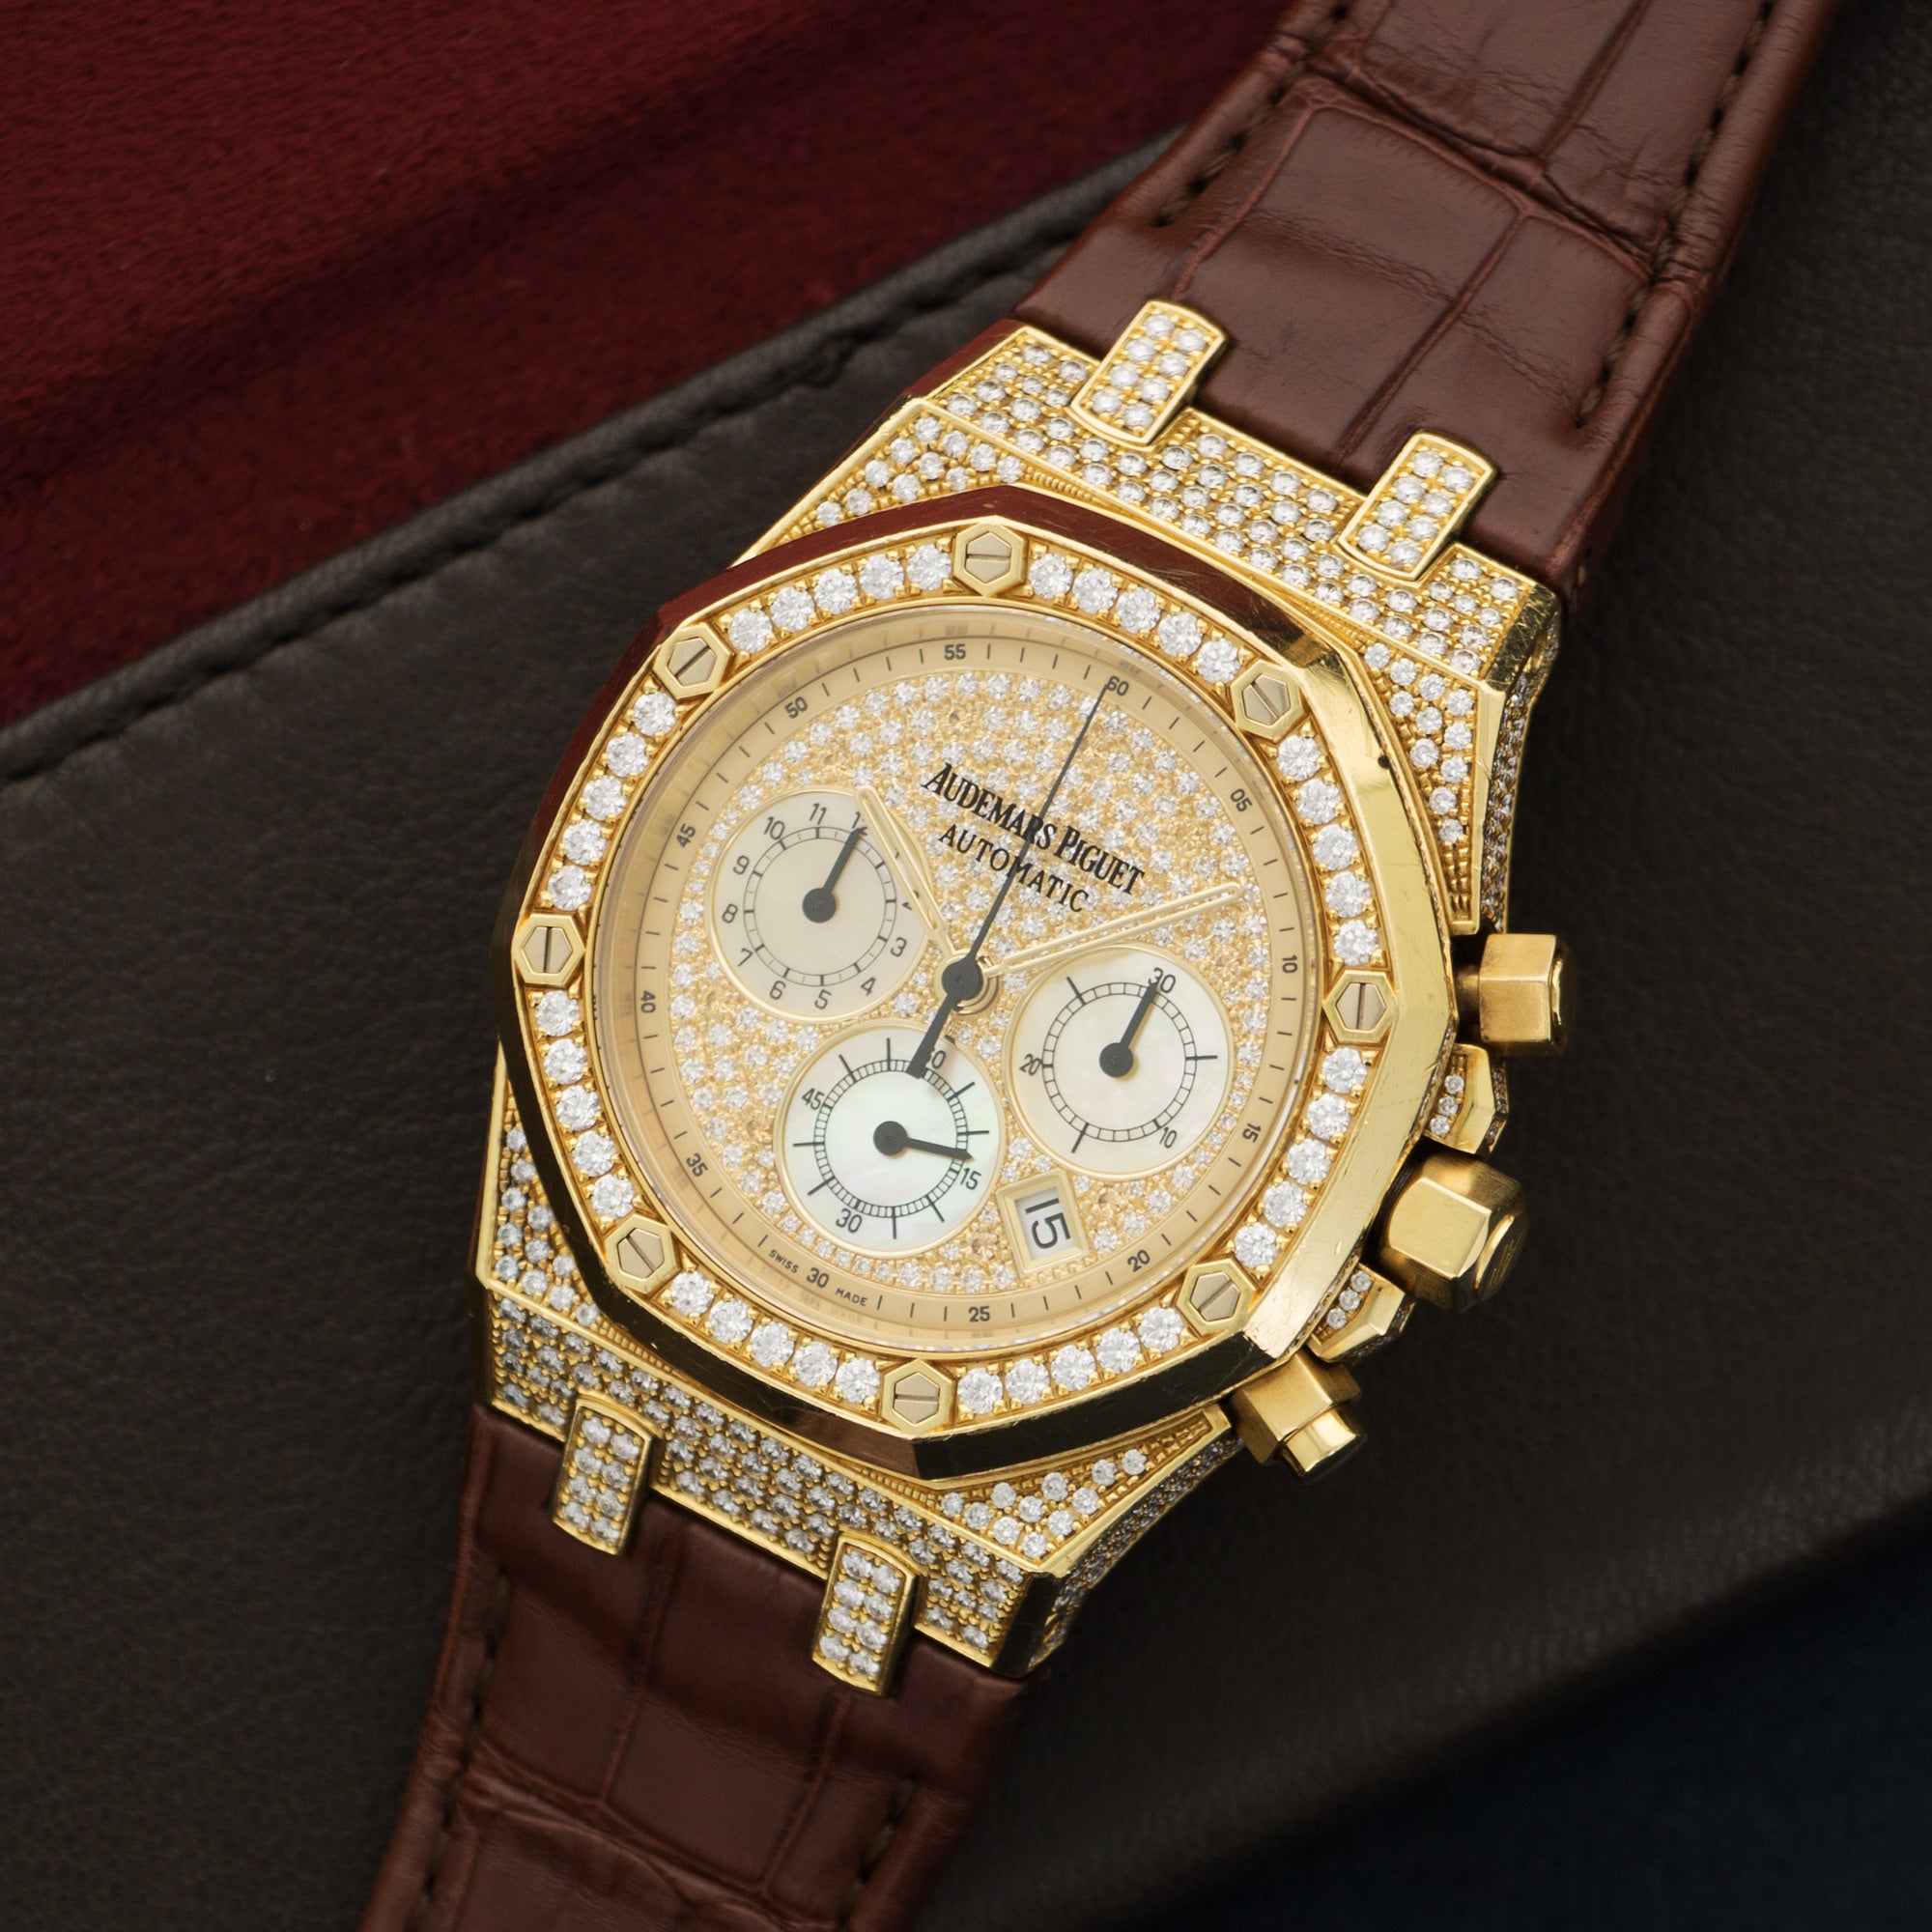 Audemars Piguet - Audemars Piguet Yellow Gold Royal Oak Chrono Diamond Watch Ref. 26067 - The Keystone Watches